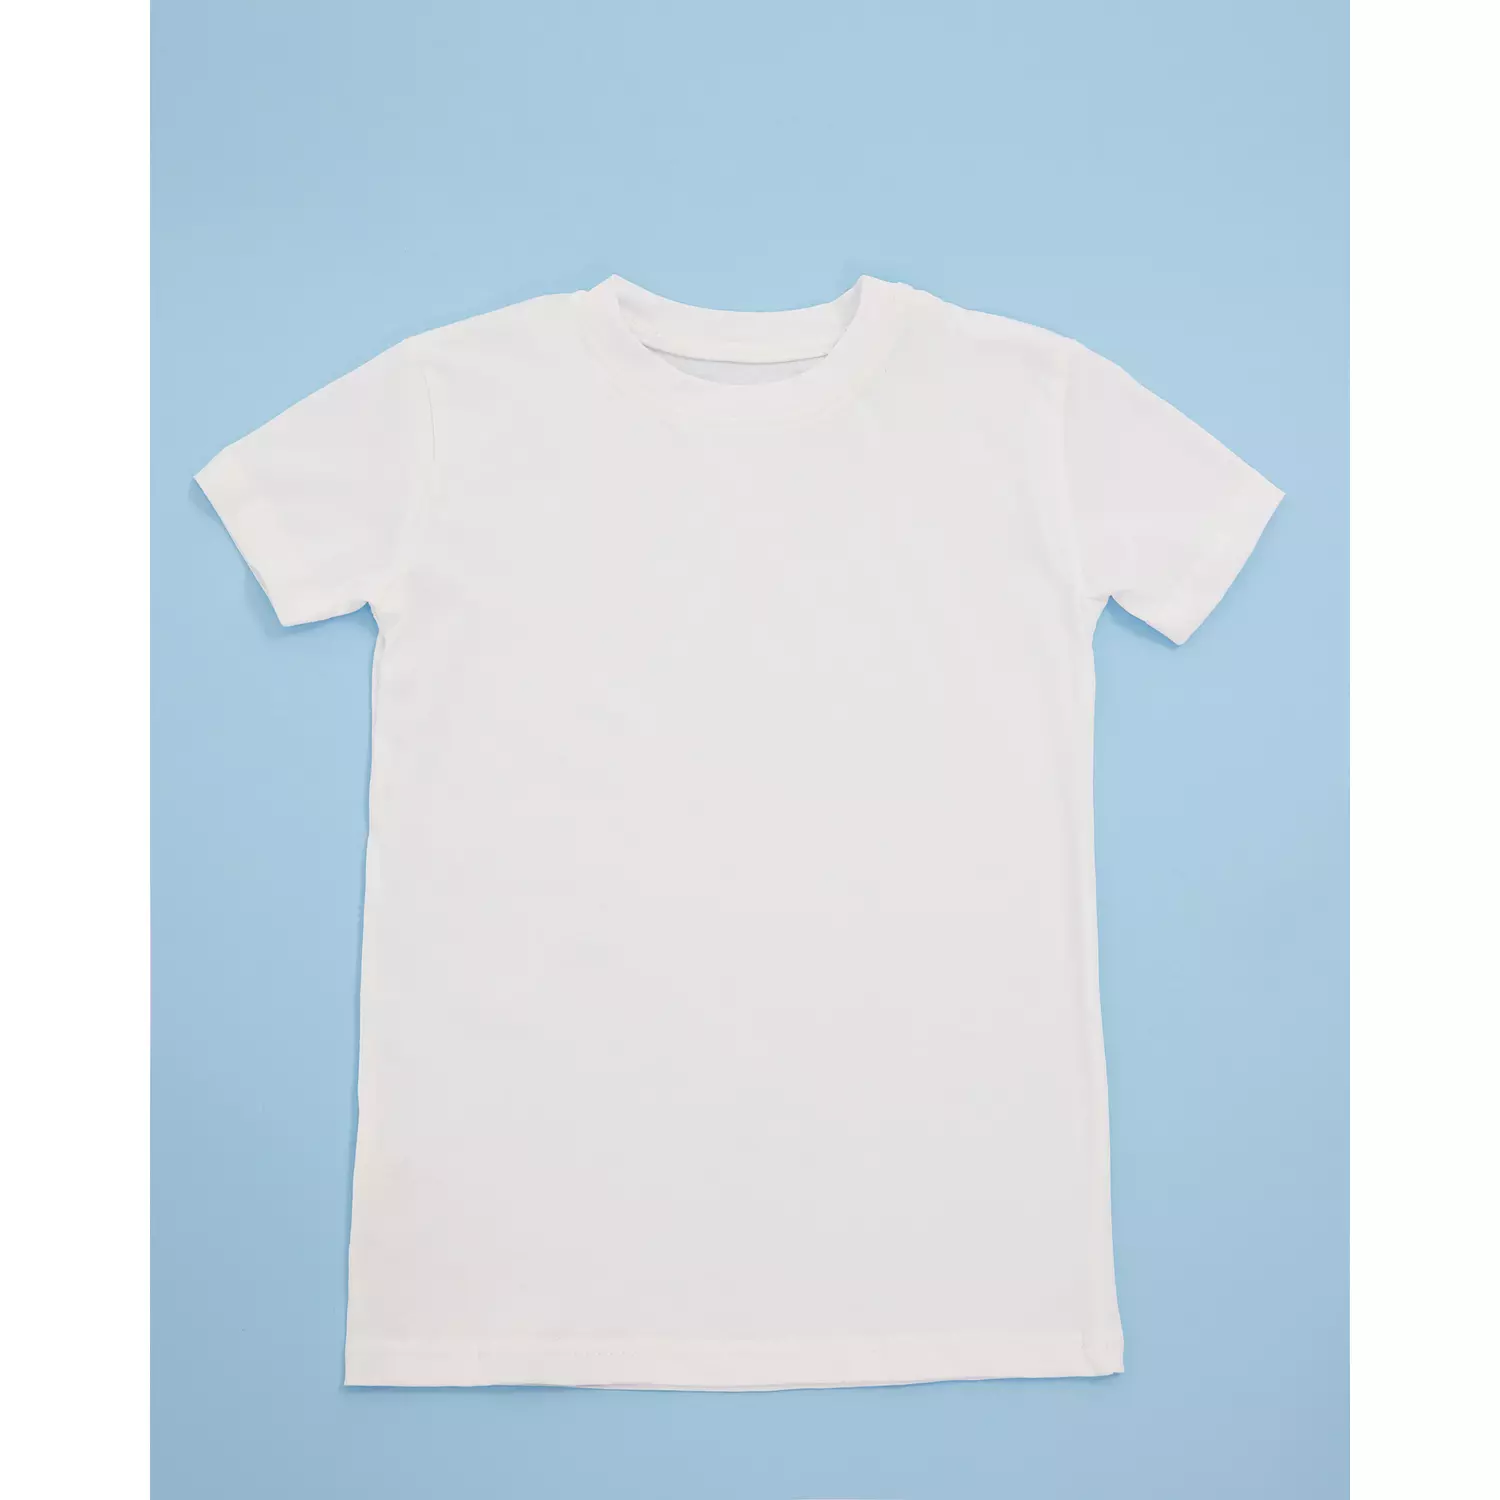 Cotton T-shirt - PLAIN 1